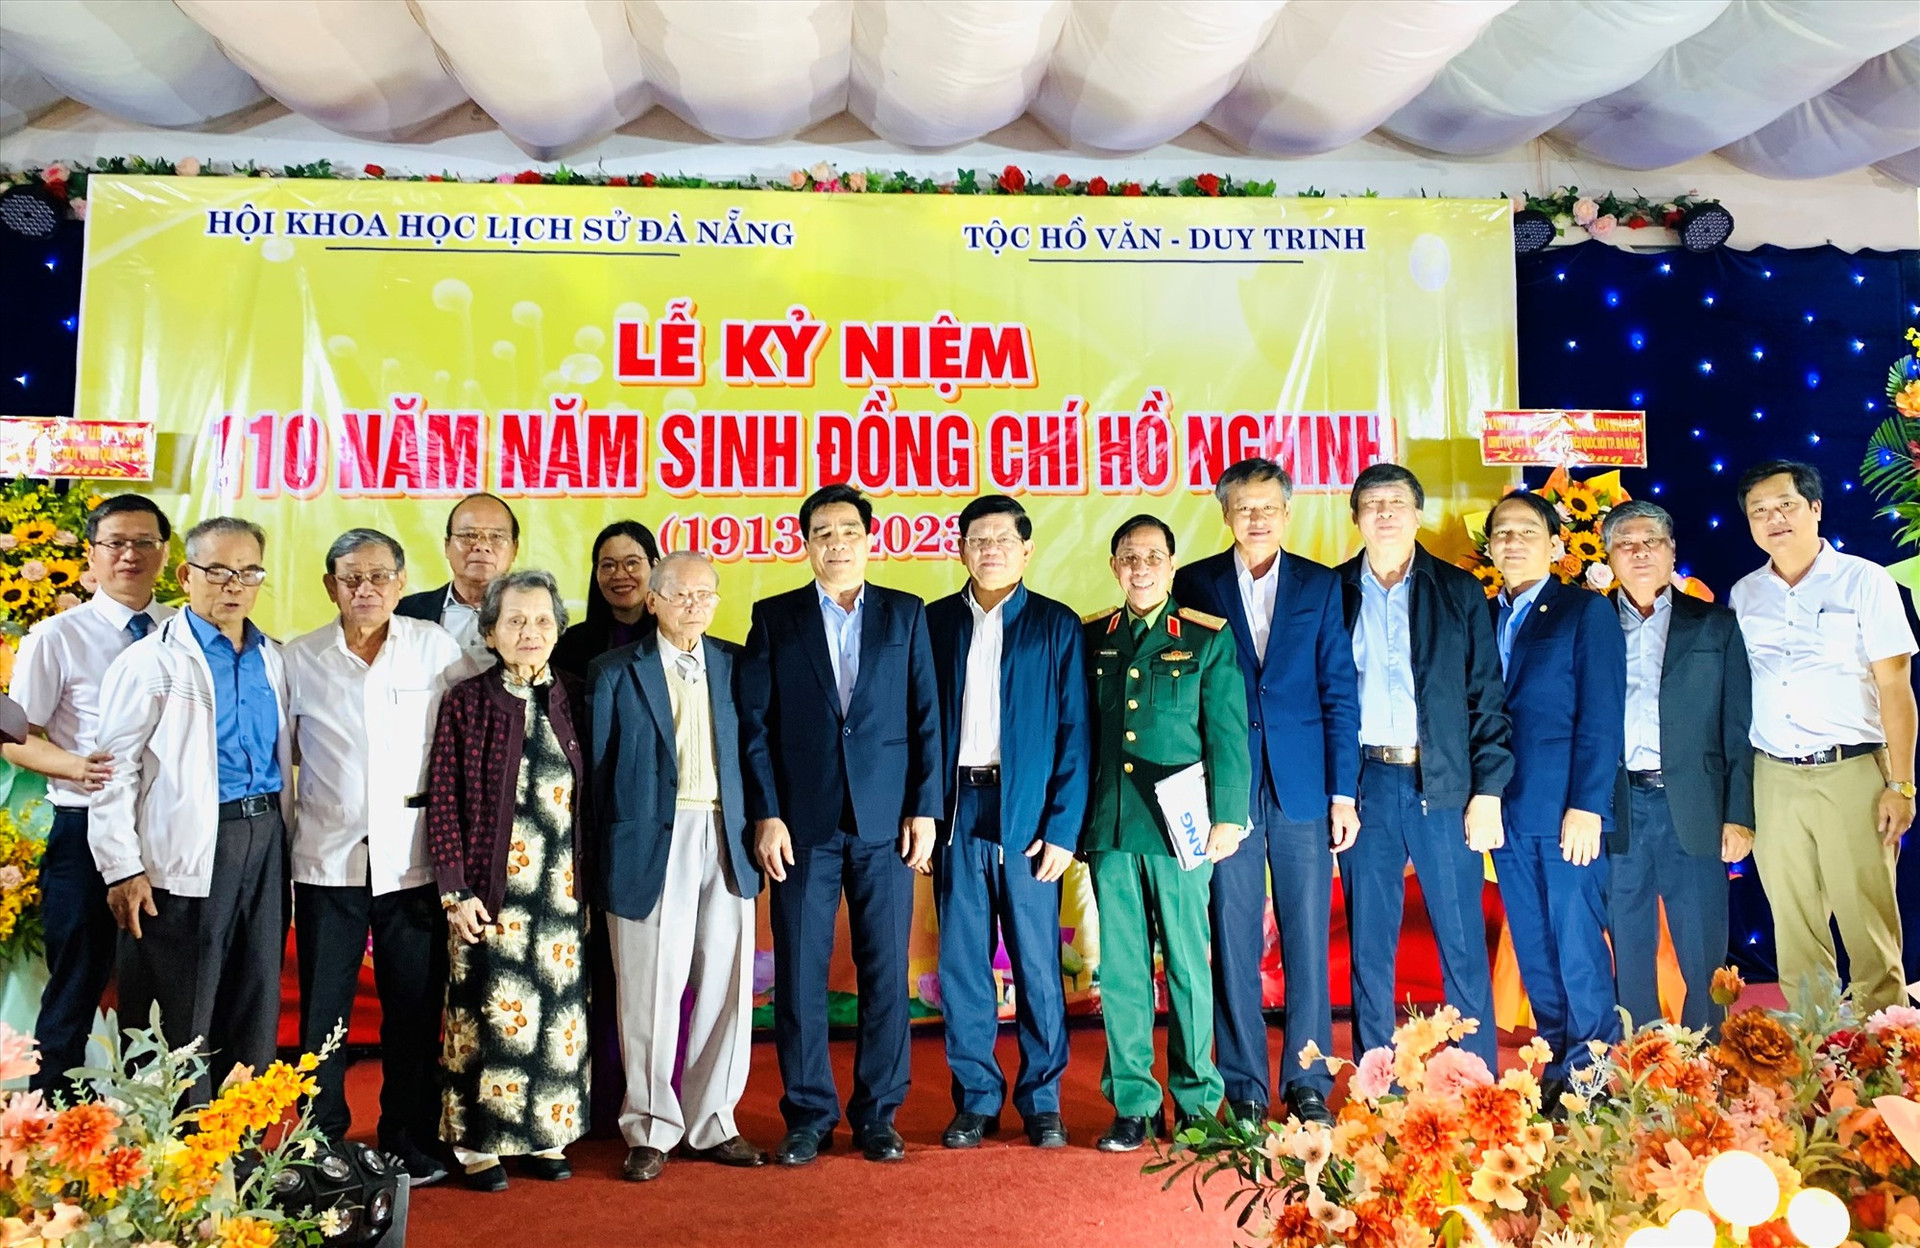 Đại diện lãnh đạo Thành ủy Đà Nẵng và Tỉnh ủy Quảng Nam chụp hình lưu niệm cùng gia đình đồng chí Hồ Nghinh.  Ảnh: N.T